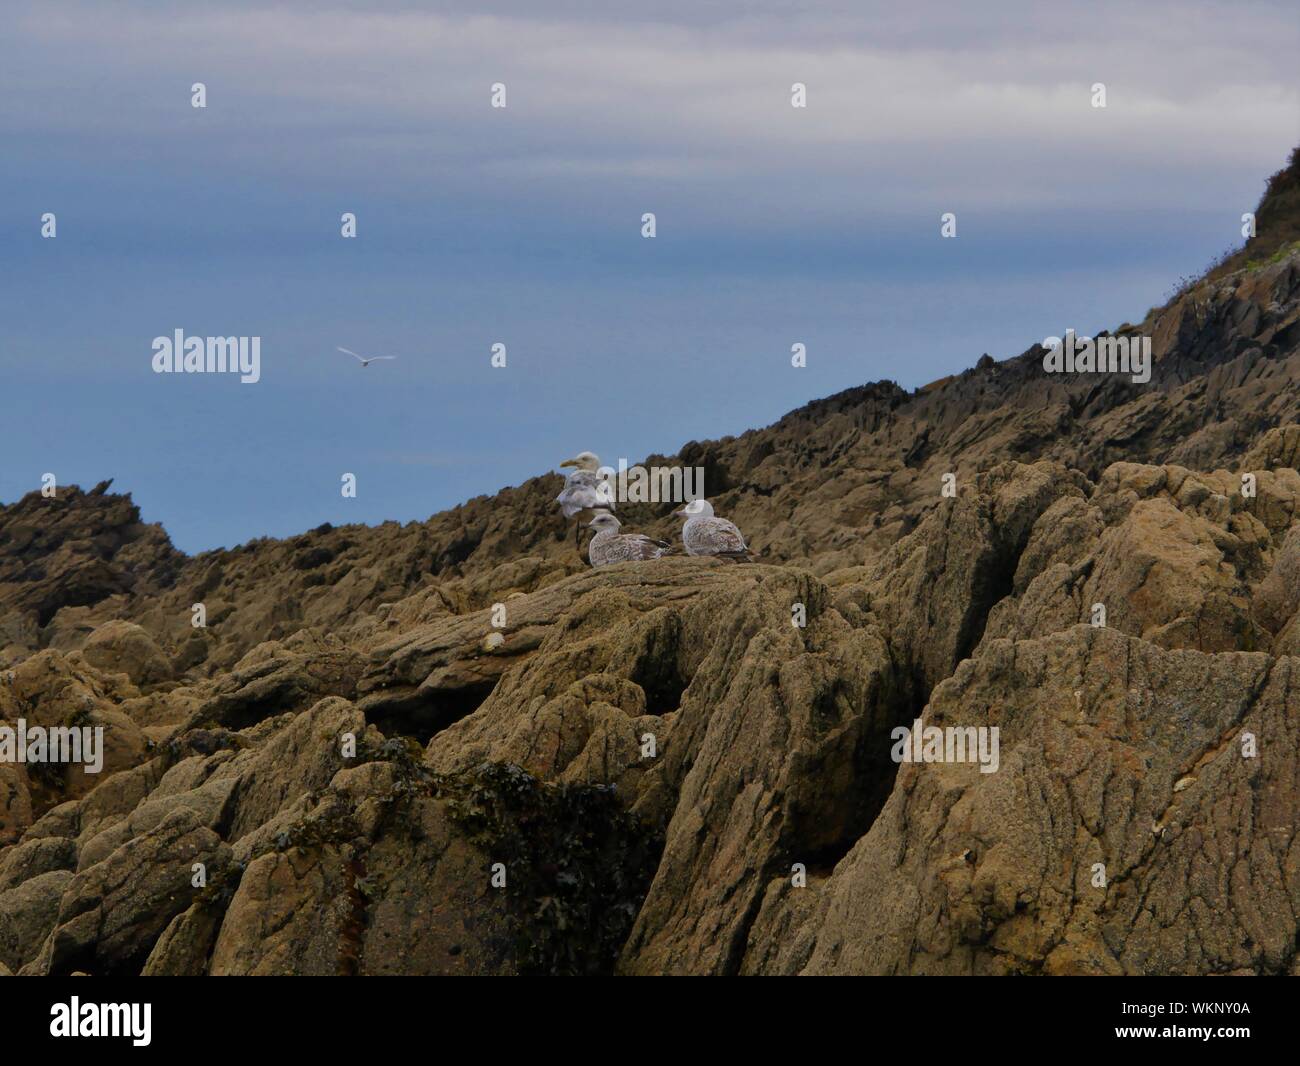 trois mouettes se reposant sur une grande étendue de rochers , mouettes blanches et grises , plage de plouguerneau , bretagne france Stock Photo